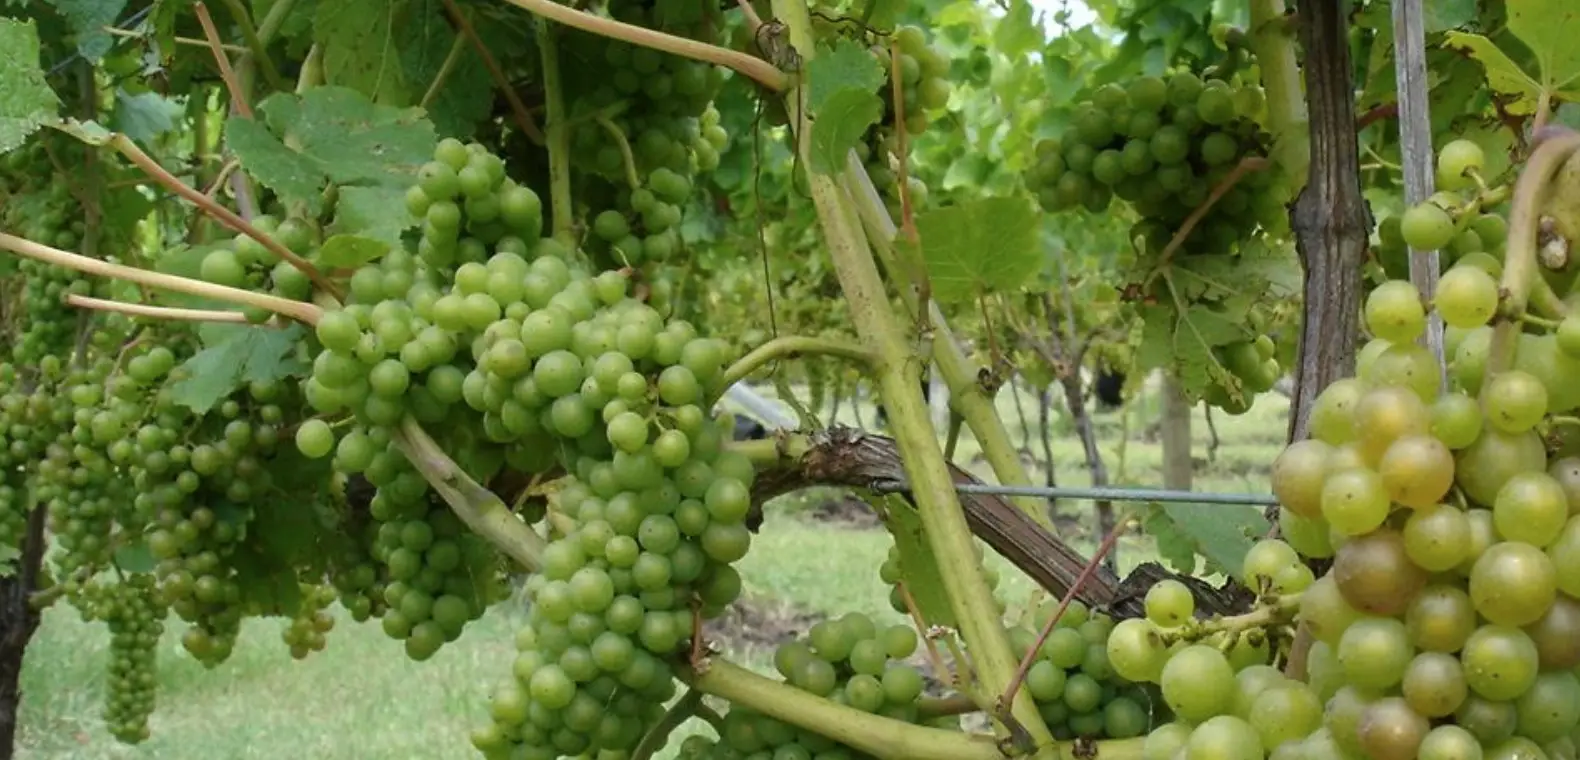 Green grapes going through veraison.